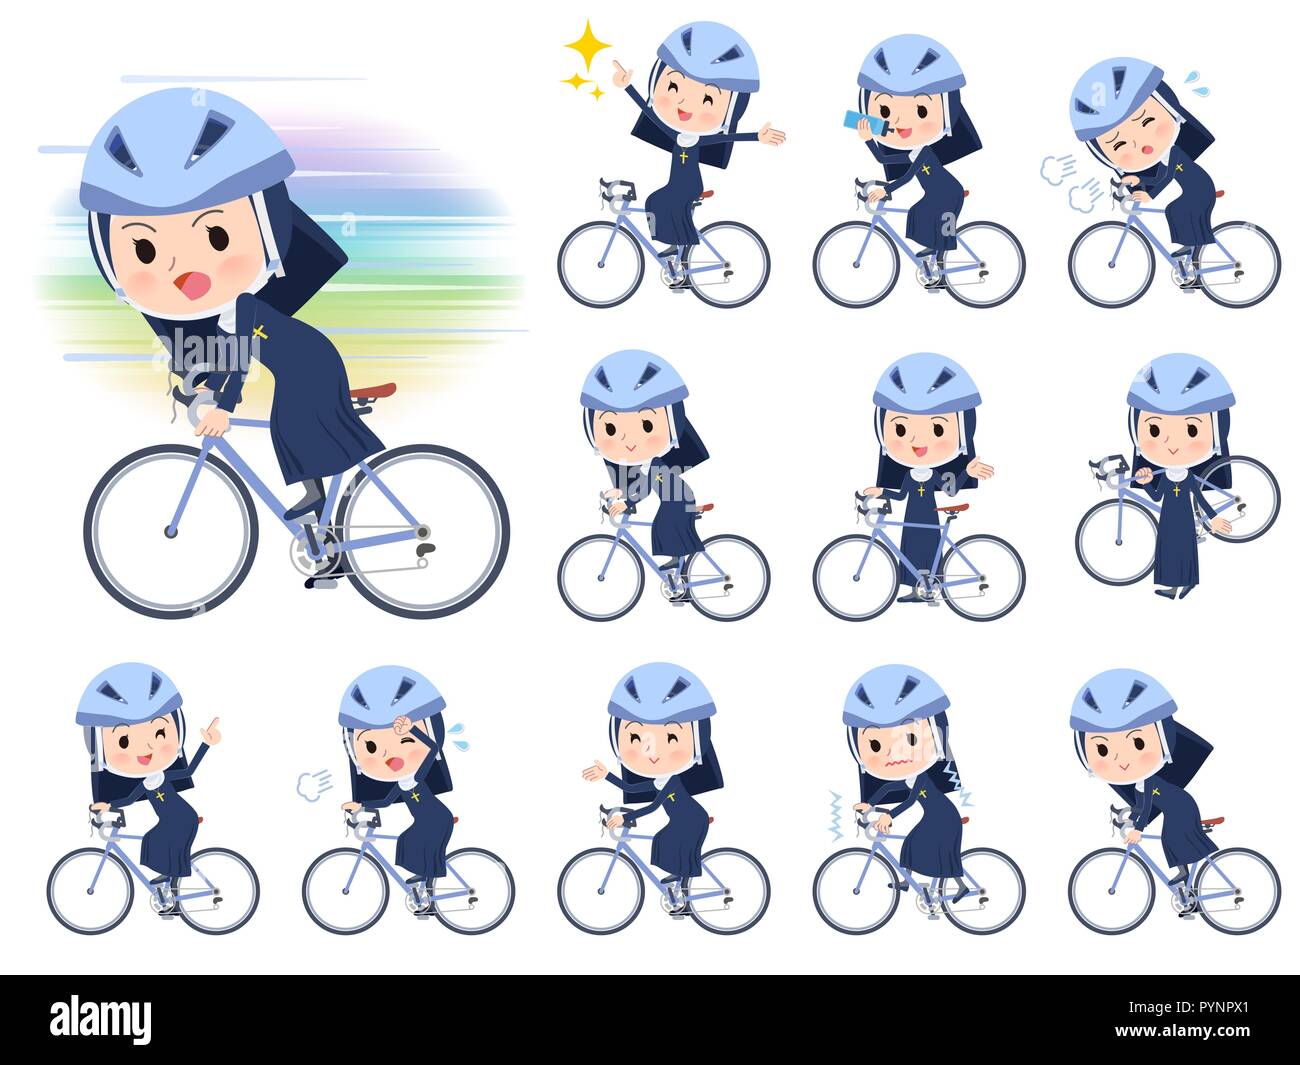 Eine Nonne, die Frauen auf der Straße Fahrrad. Es ist eine Aktion, genießt.  Es ist Vektor Kunst so ist es leicht zu bearbeiten Stock-Vektorgrafik -  Alamy